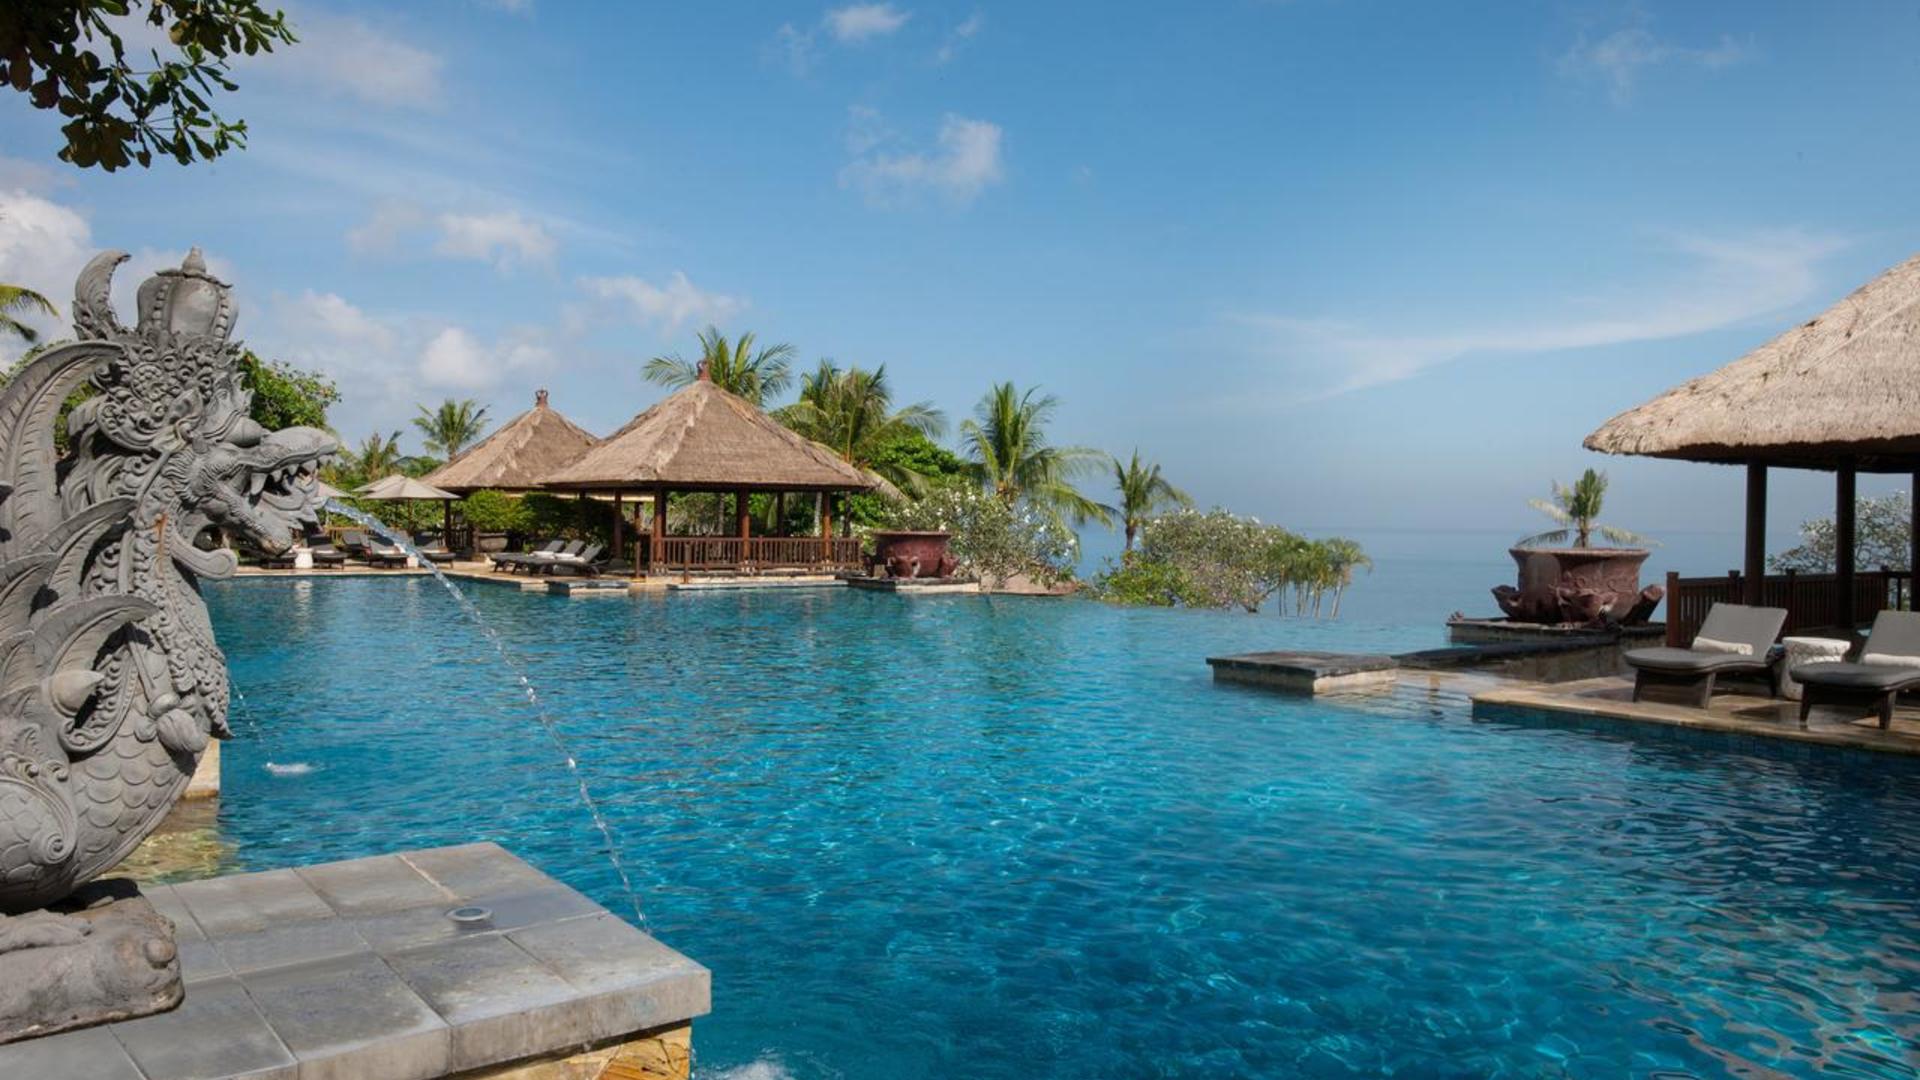 Индонезия. Бали остров. Ayana Resort and Spa Bali, Индонезия. Бали (остров в малайском архипелаге). Бали (остров в малайском архипелаге) достопримечательности.